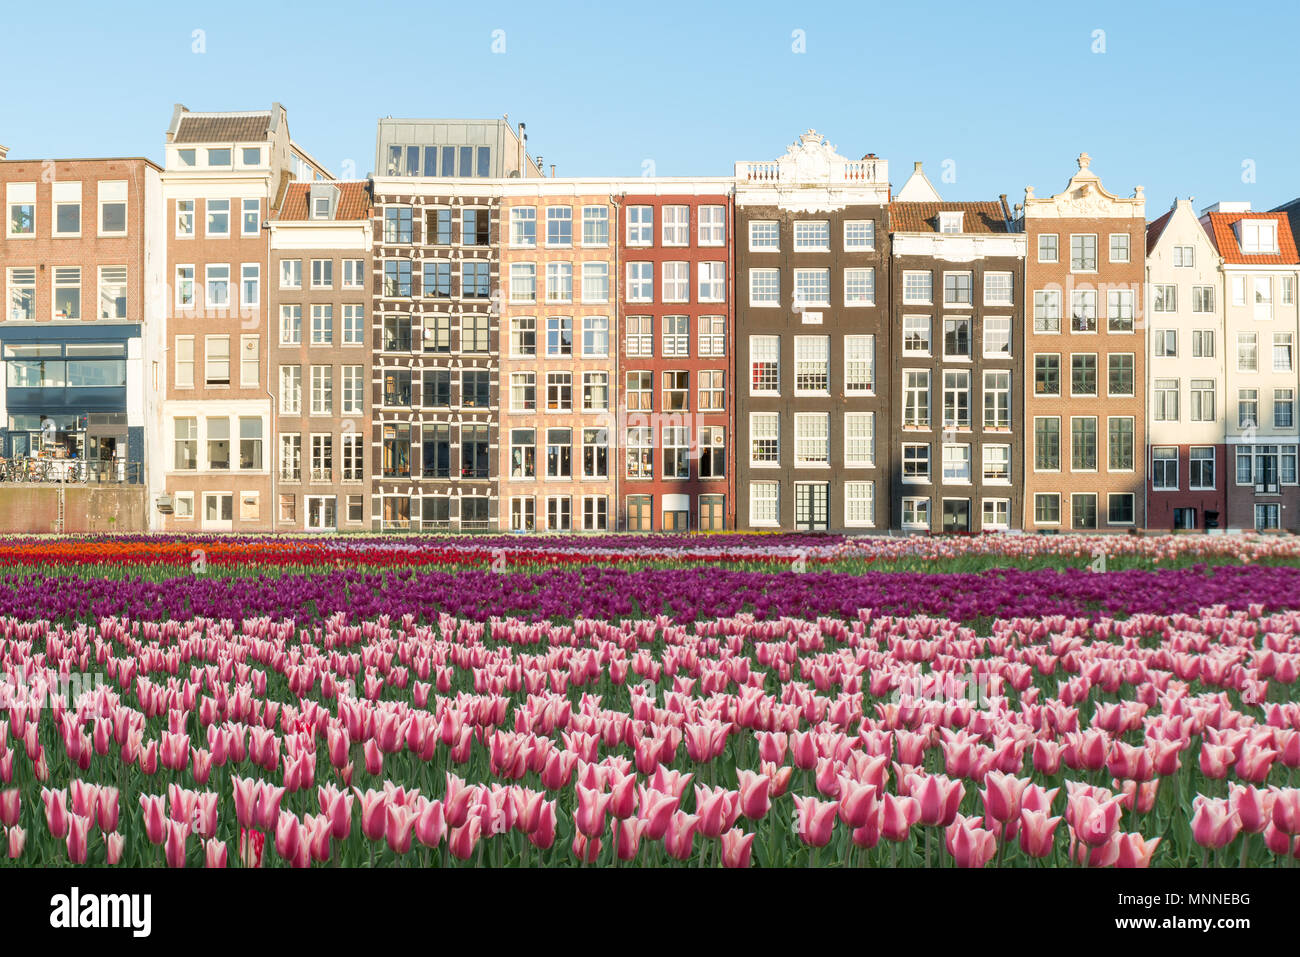 Niederlande Tulpen und Fassaden der alten Häuser in Amsterdam, Niederlande. Holländische Häuser mit frischen Tulpen Blumen. Stockfoto